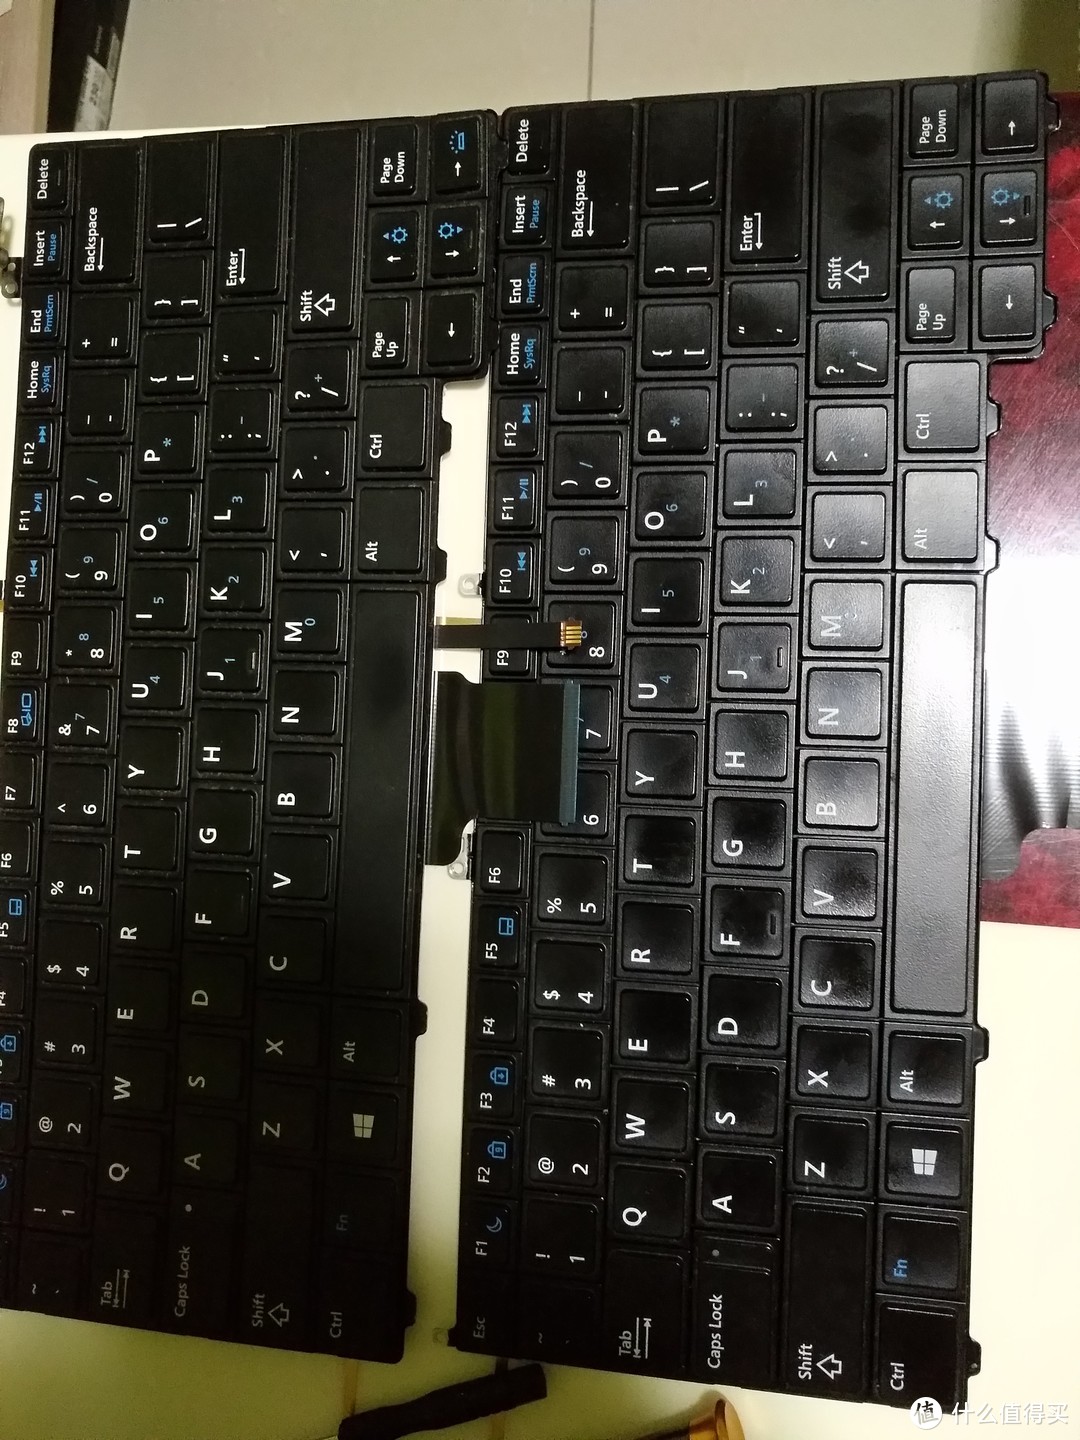 背光键盘和普通键盘对比多了一条背光排线和背光键